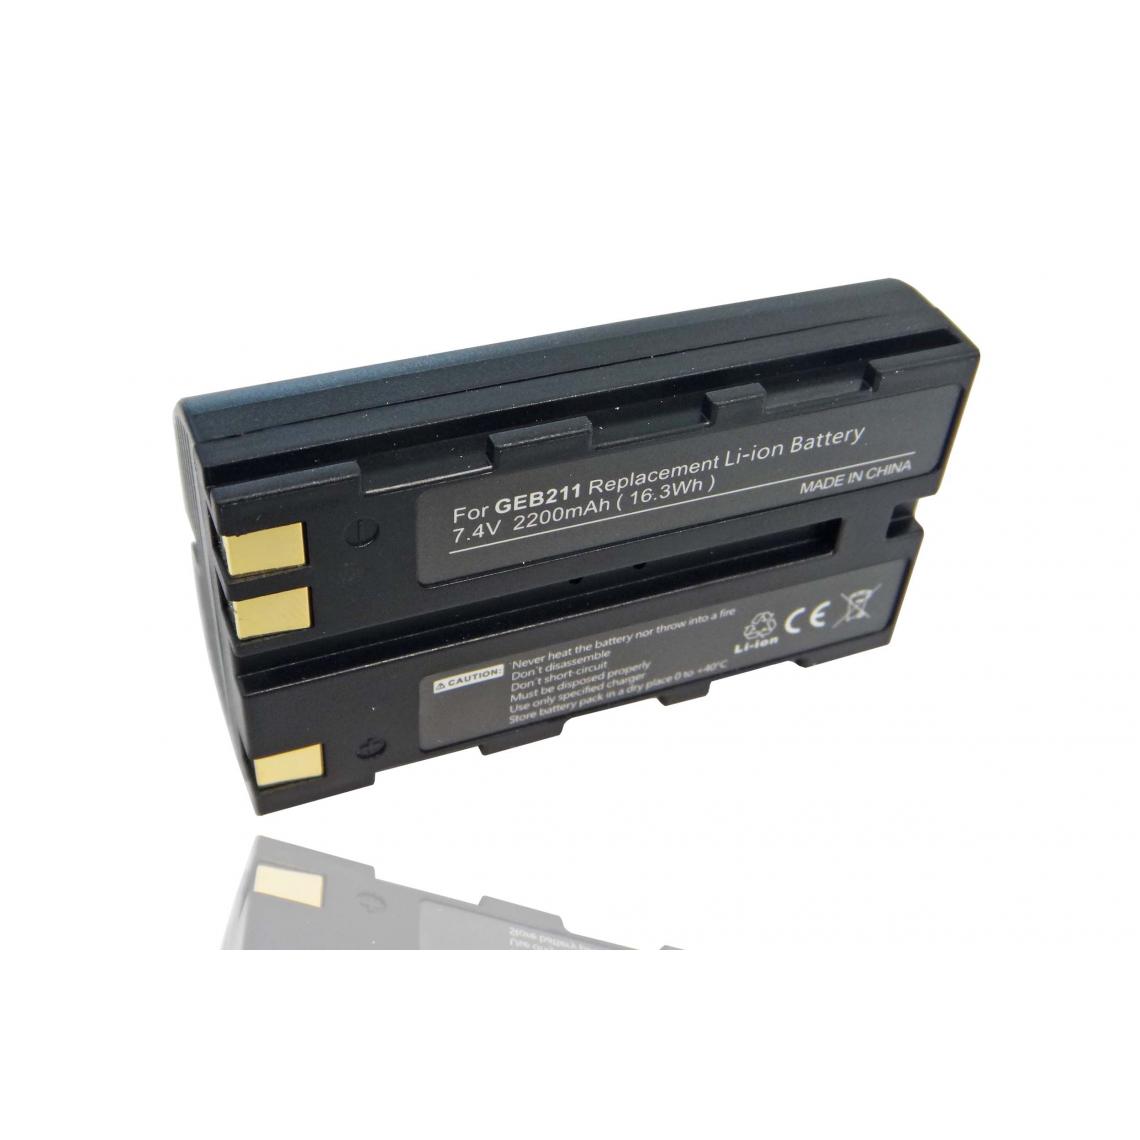 Vhbw - vhbw Batterie compatible avec Leica GS20, RCS1100, RX1200, RX900 dispositif de mesure laser, outil de mesure (2200mAh, 7,4V, Li-ion) - Piles rechargeables